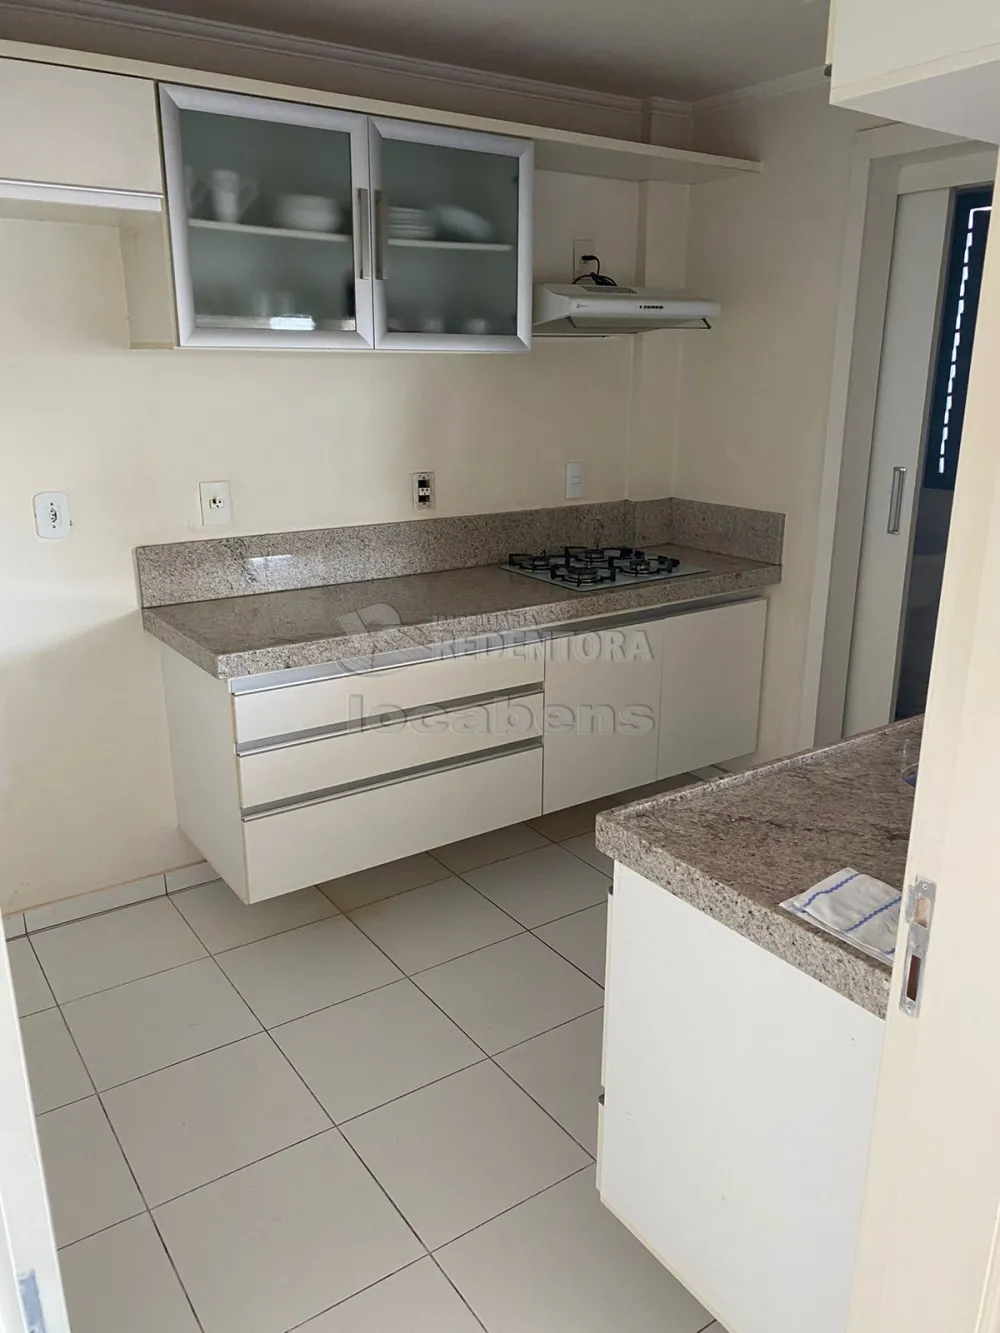 Comprar Apartamento / Padrão em São José do Rio Preto apenas R$ 490.000,00 - Foto 5